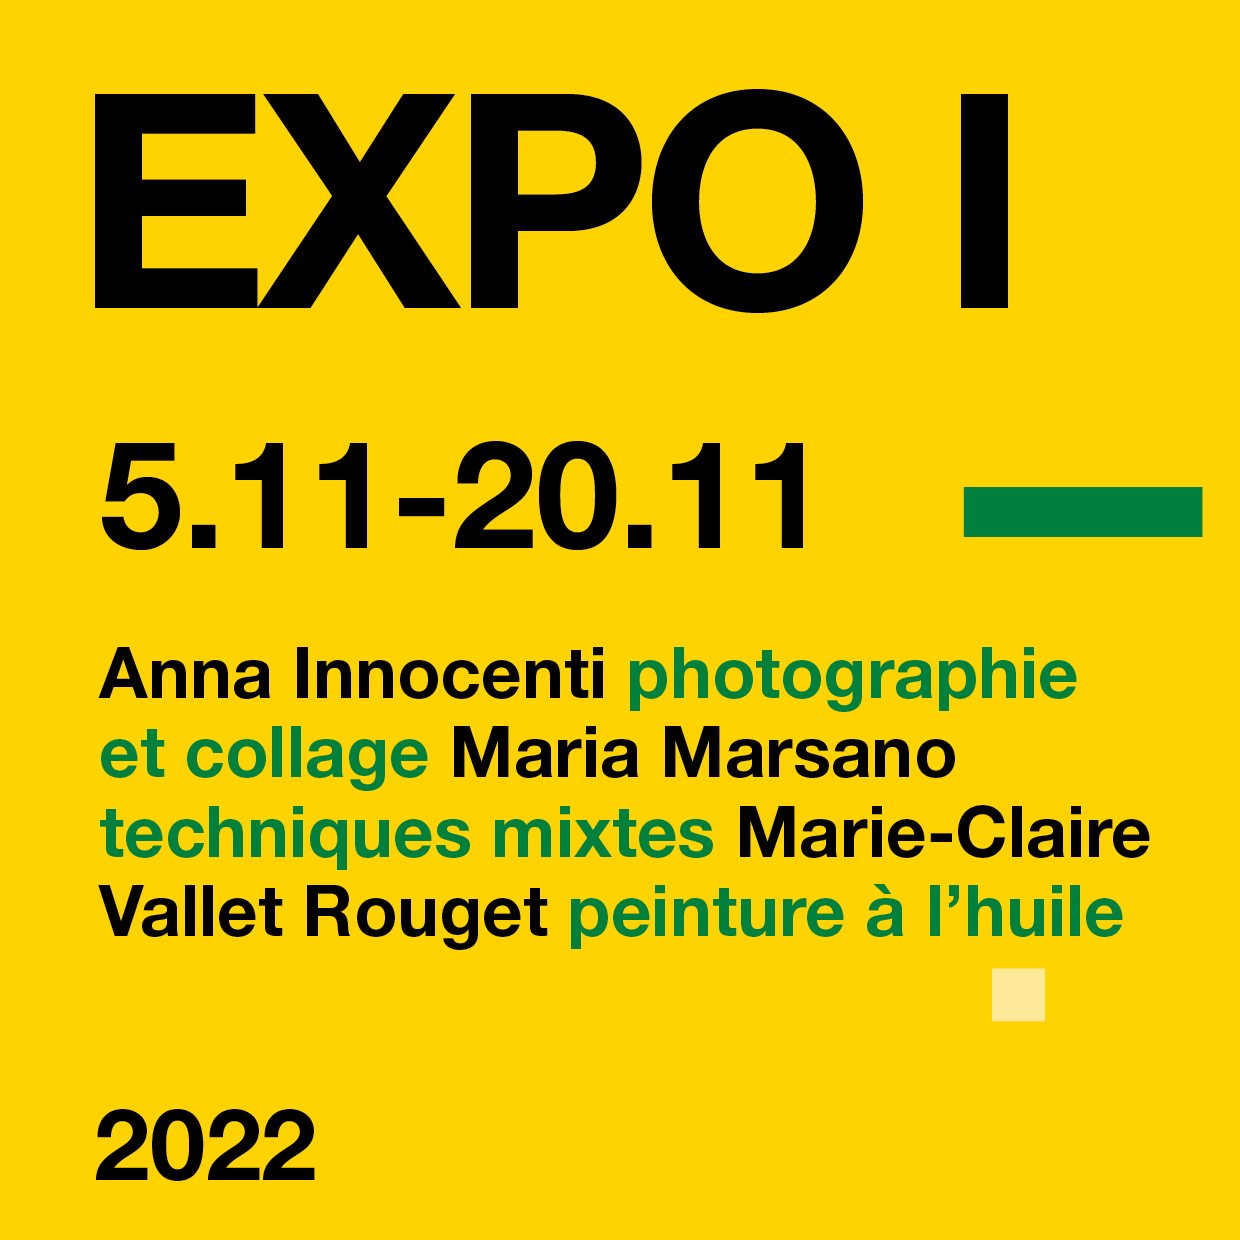 EXPO I 2022